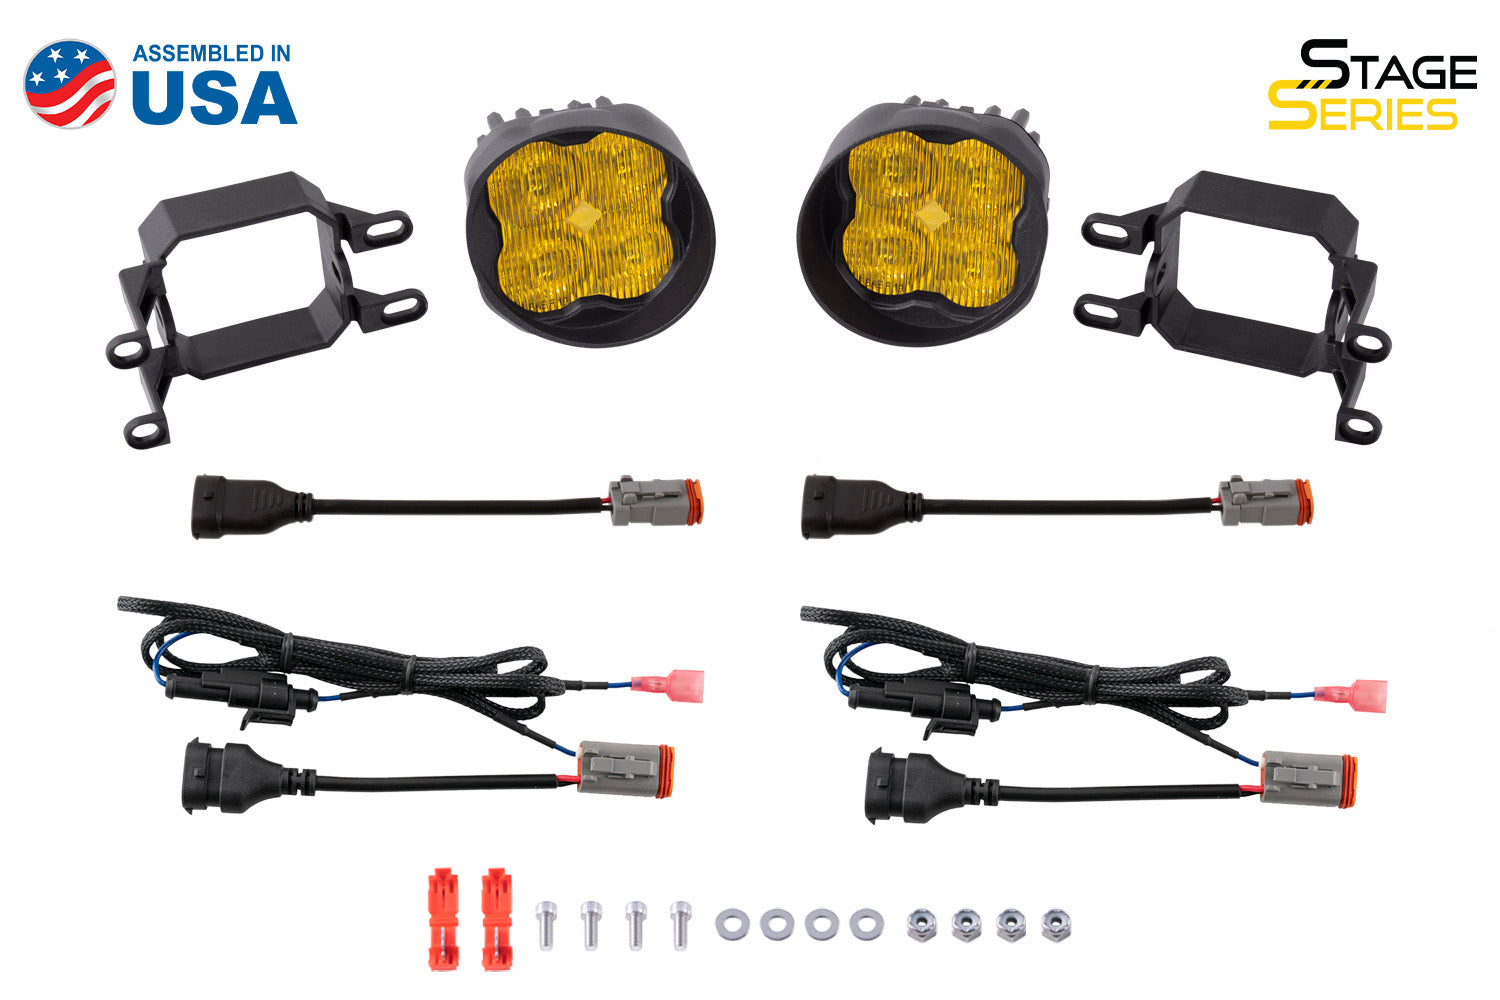 SS3 LED Fog Light Kit for 2010-2021 Toyota 4Runner, Yellow SAE Fog Pro